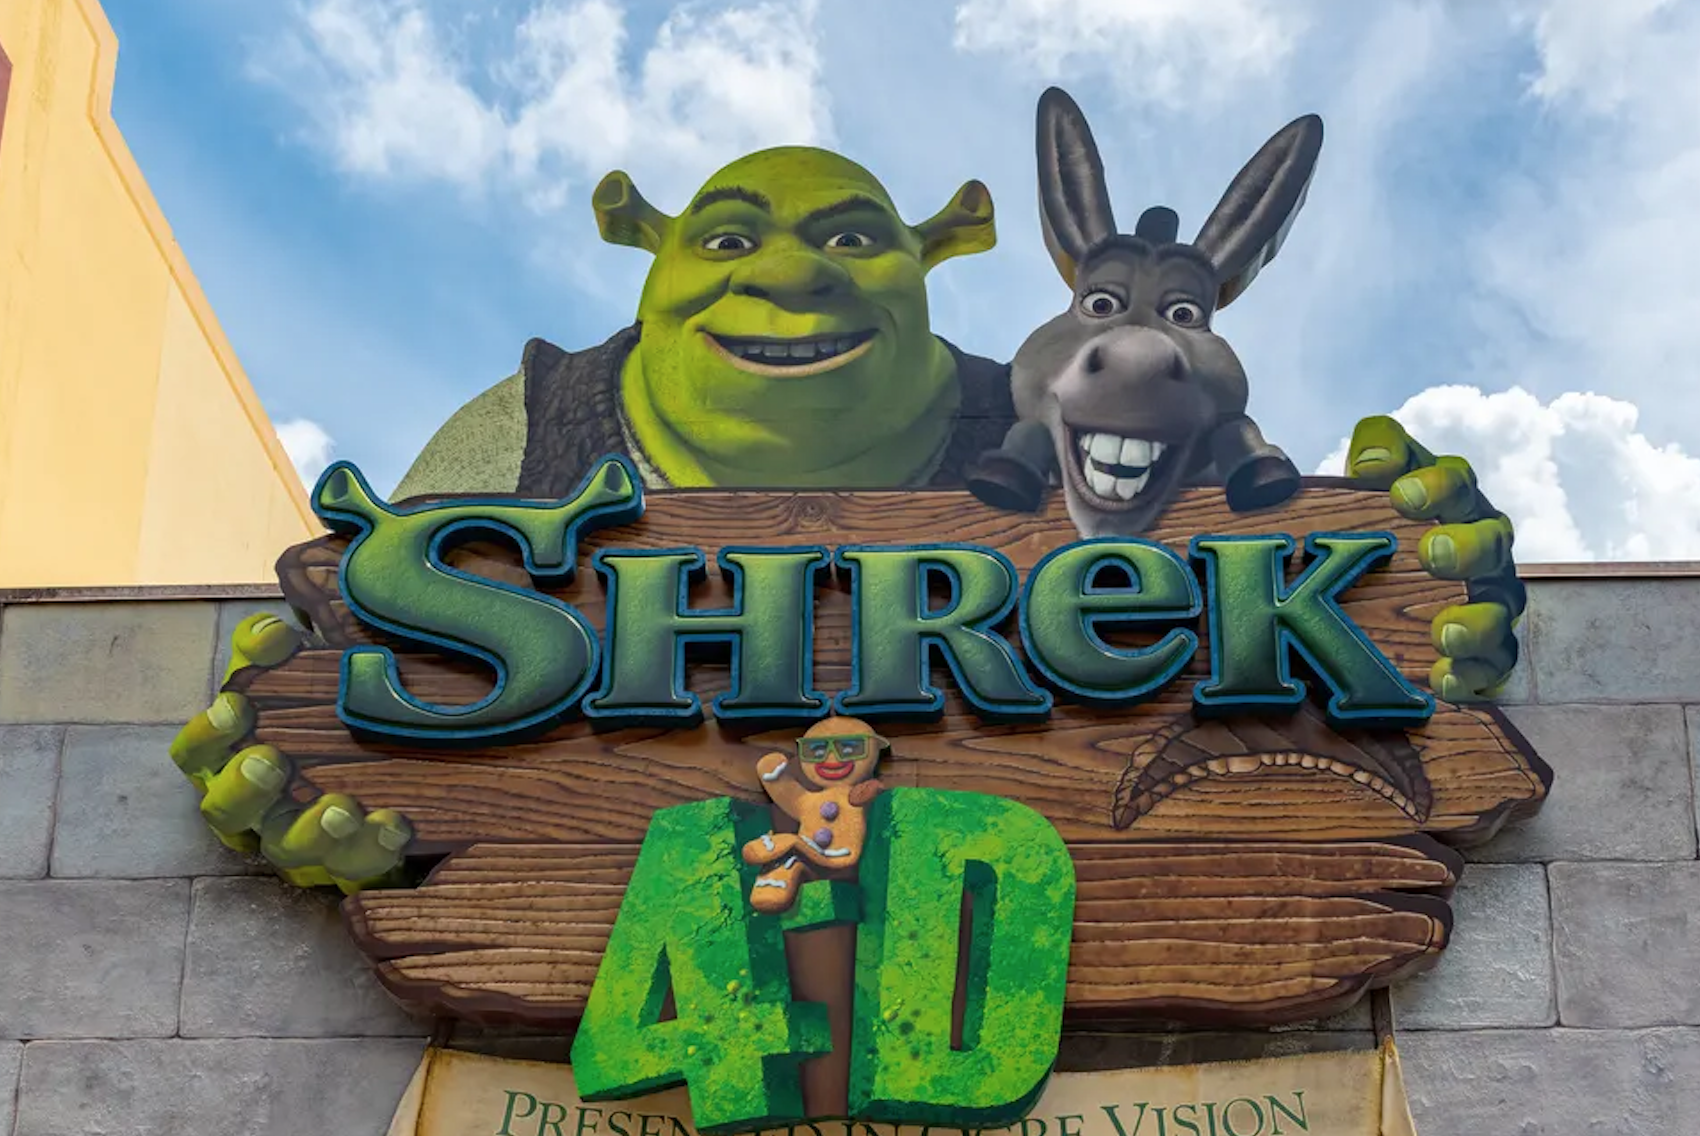 Shrek 4D closing